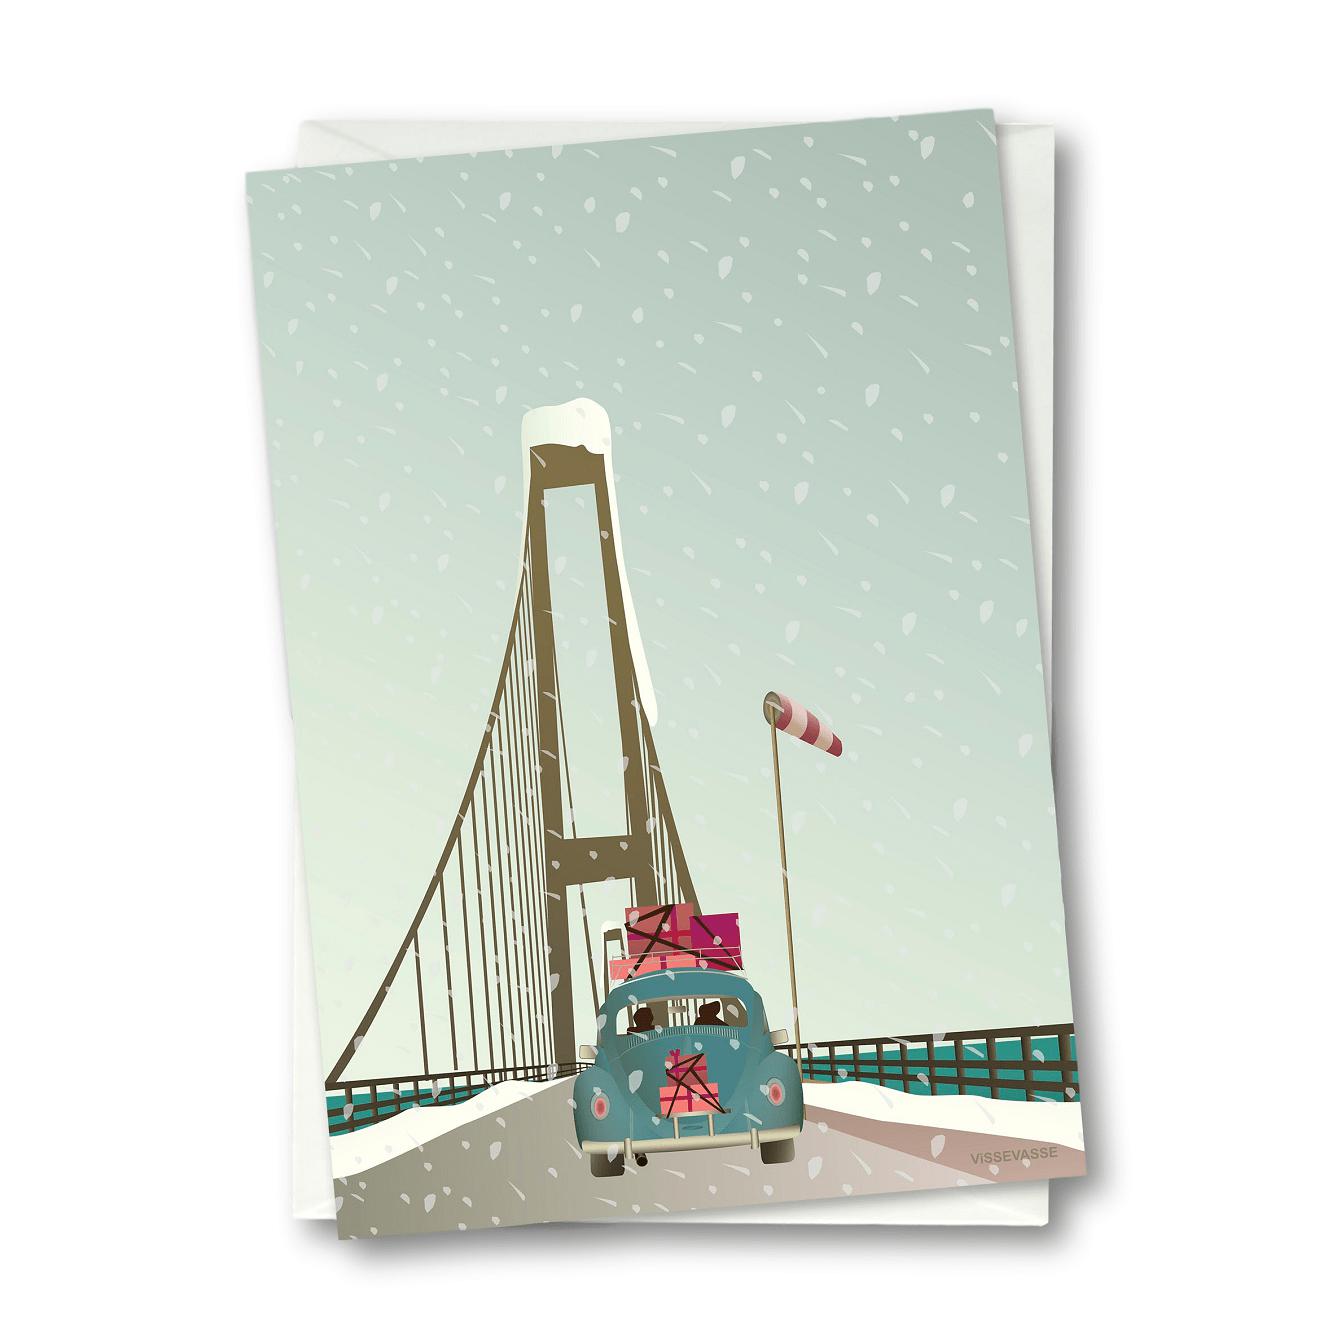 Vissevasse Driving Home For Christmas Anledningskort, 10,5x15cm